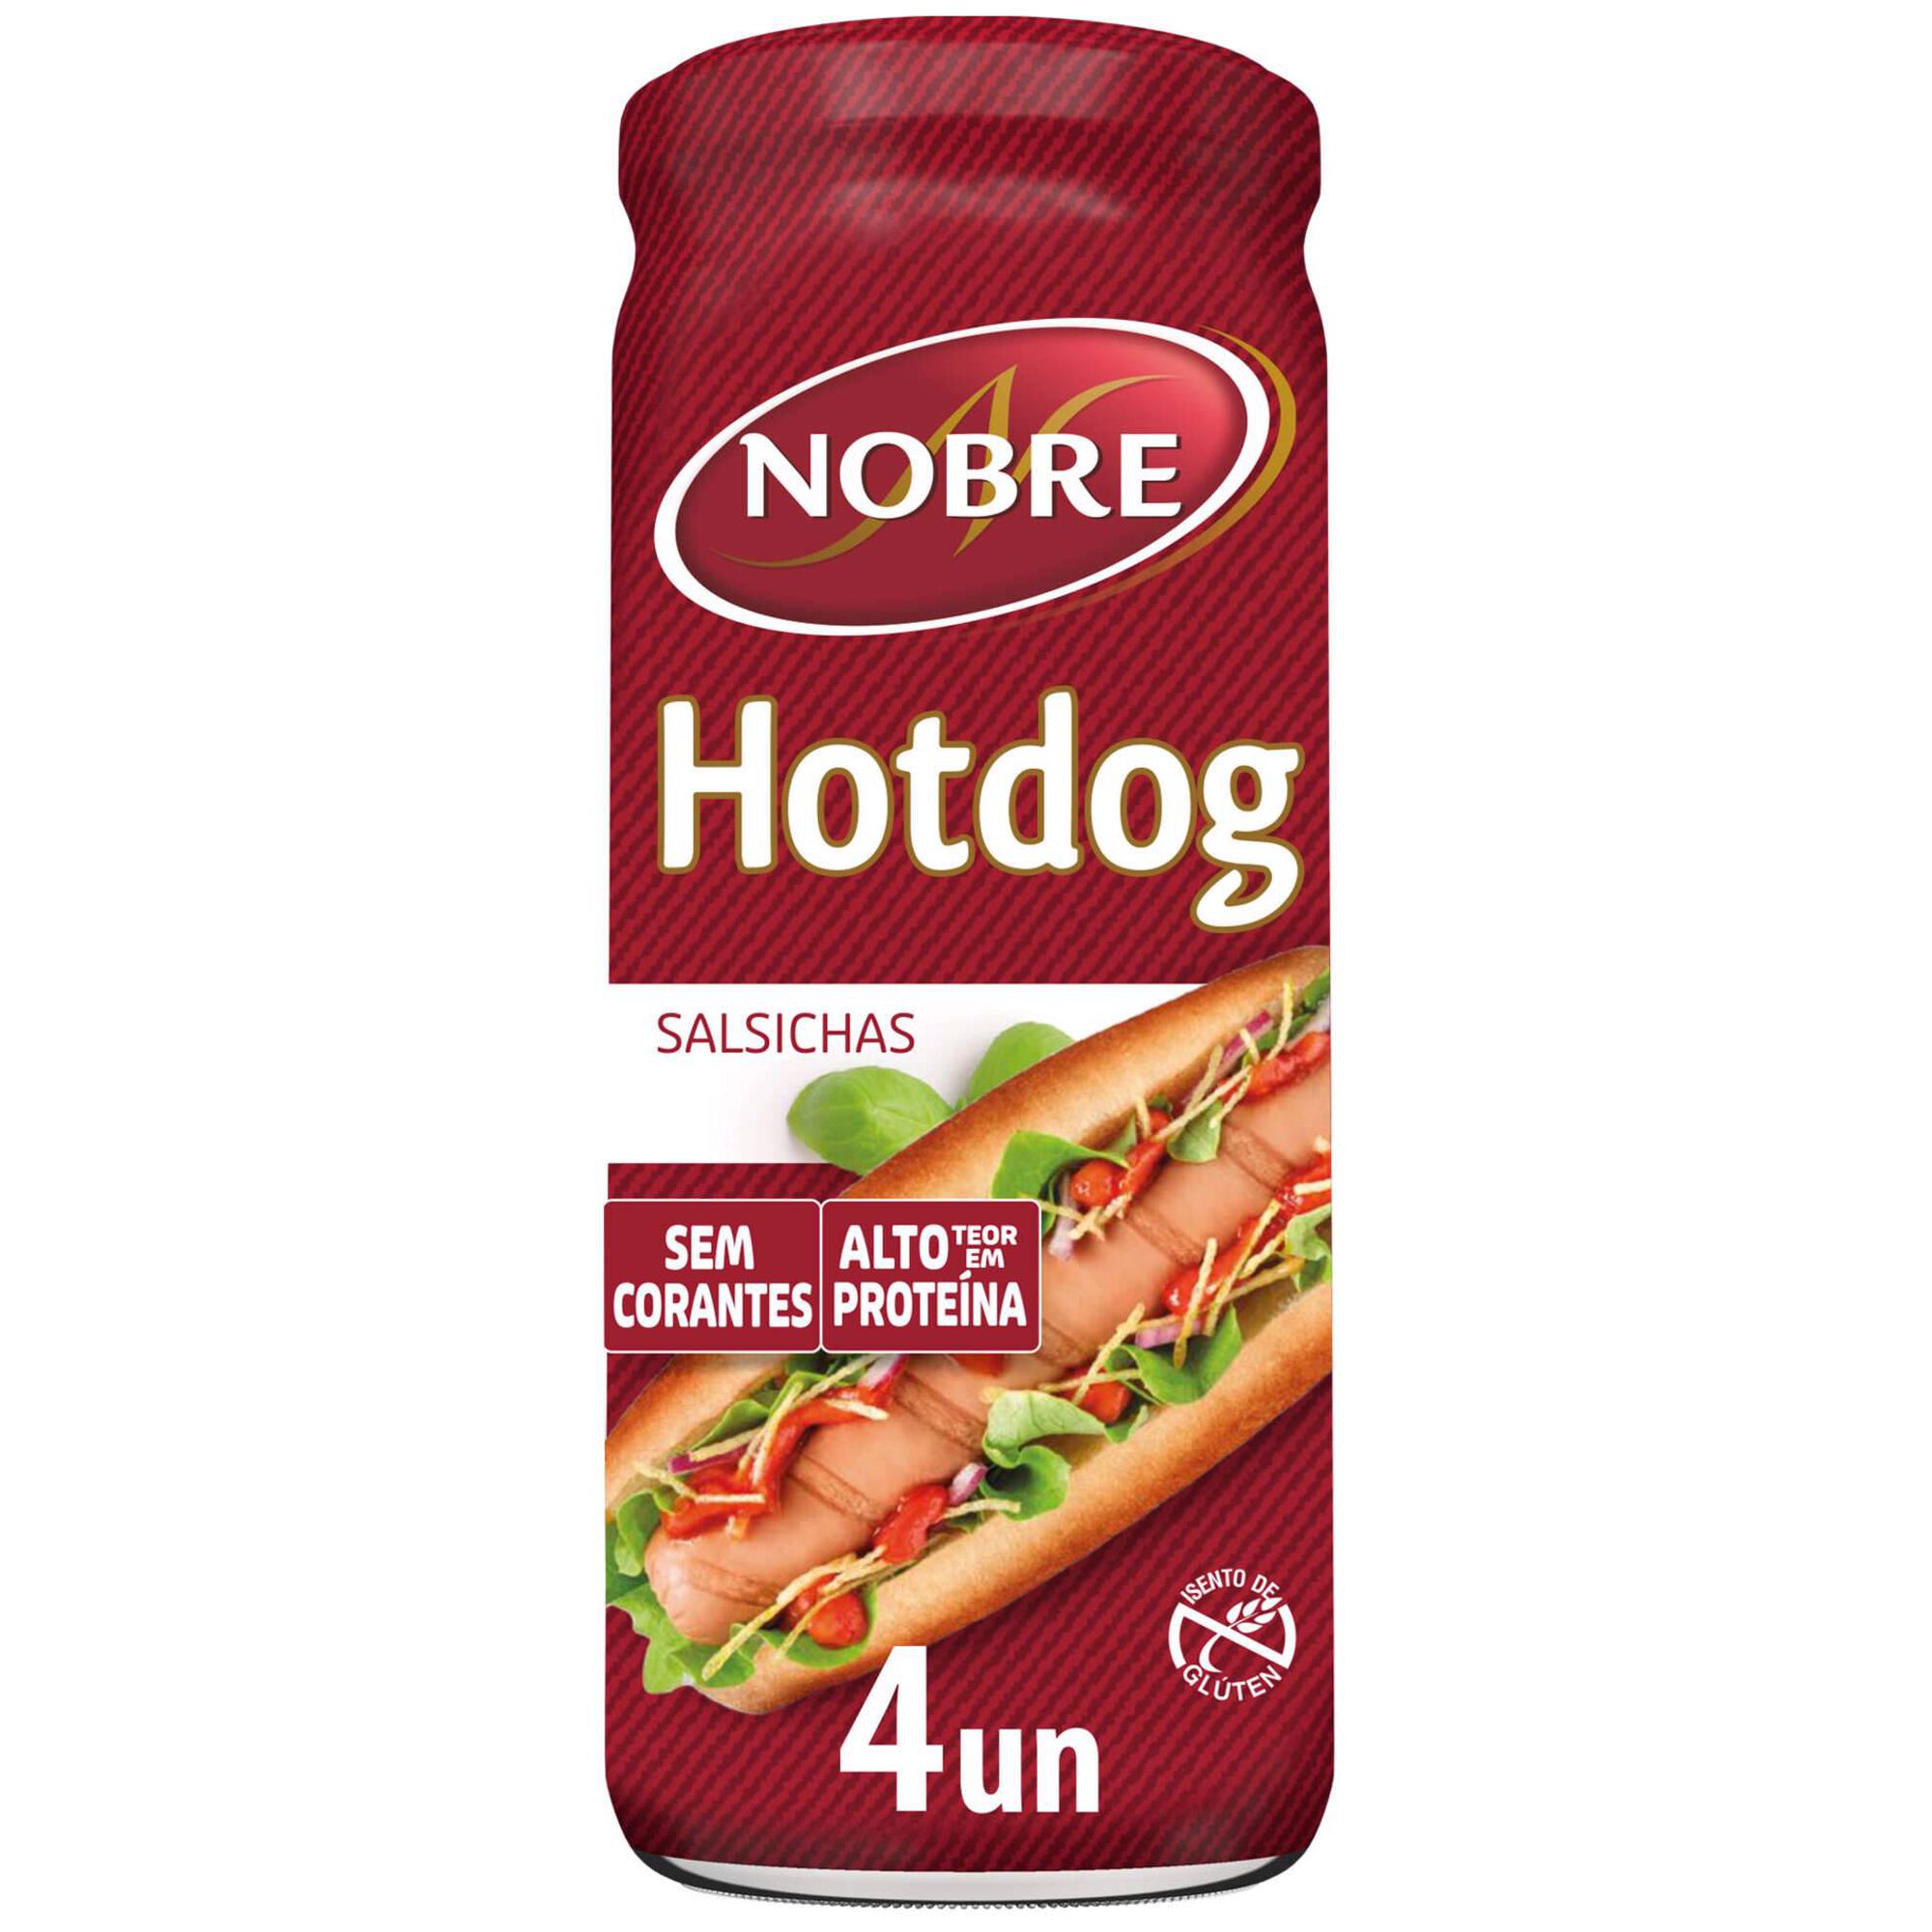 Salsichas Hot Dog Frasco 4 un